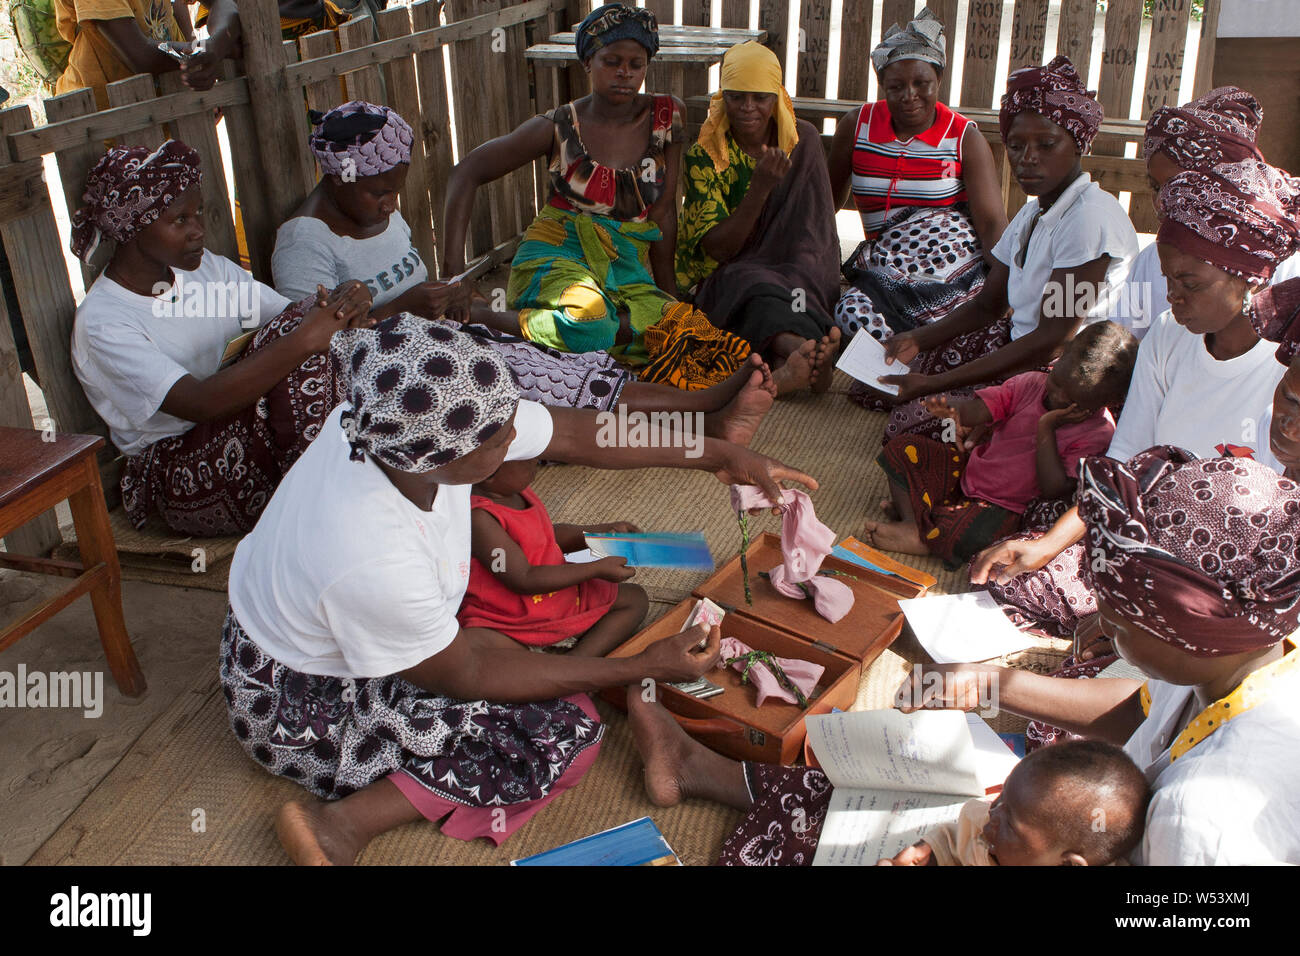 Lokale Kleinstfinanzierungs- und Kreditfazilität im Dorf, unterstützt von der Bergbaugesellschaft.Group, die von Frauen betrieben wird - wegen fehlender Bankgeschäfte in armen ländlichen Gebieten. Stockfoto